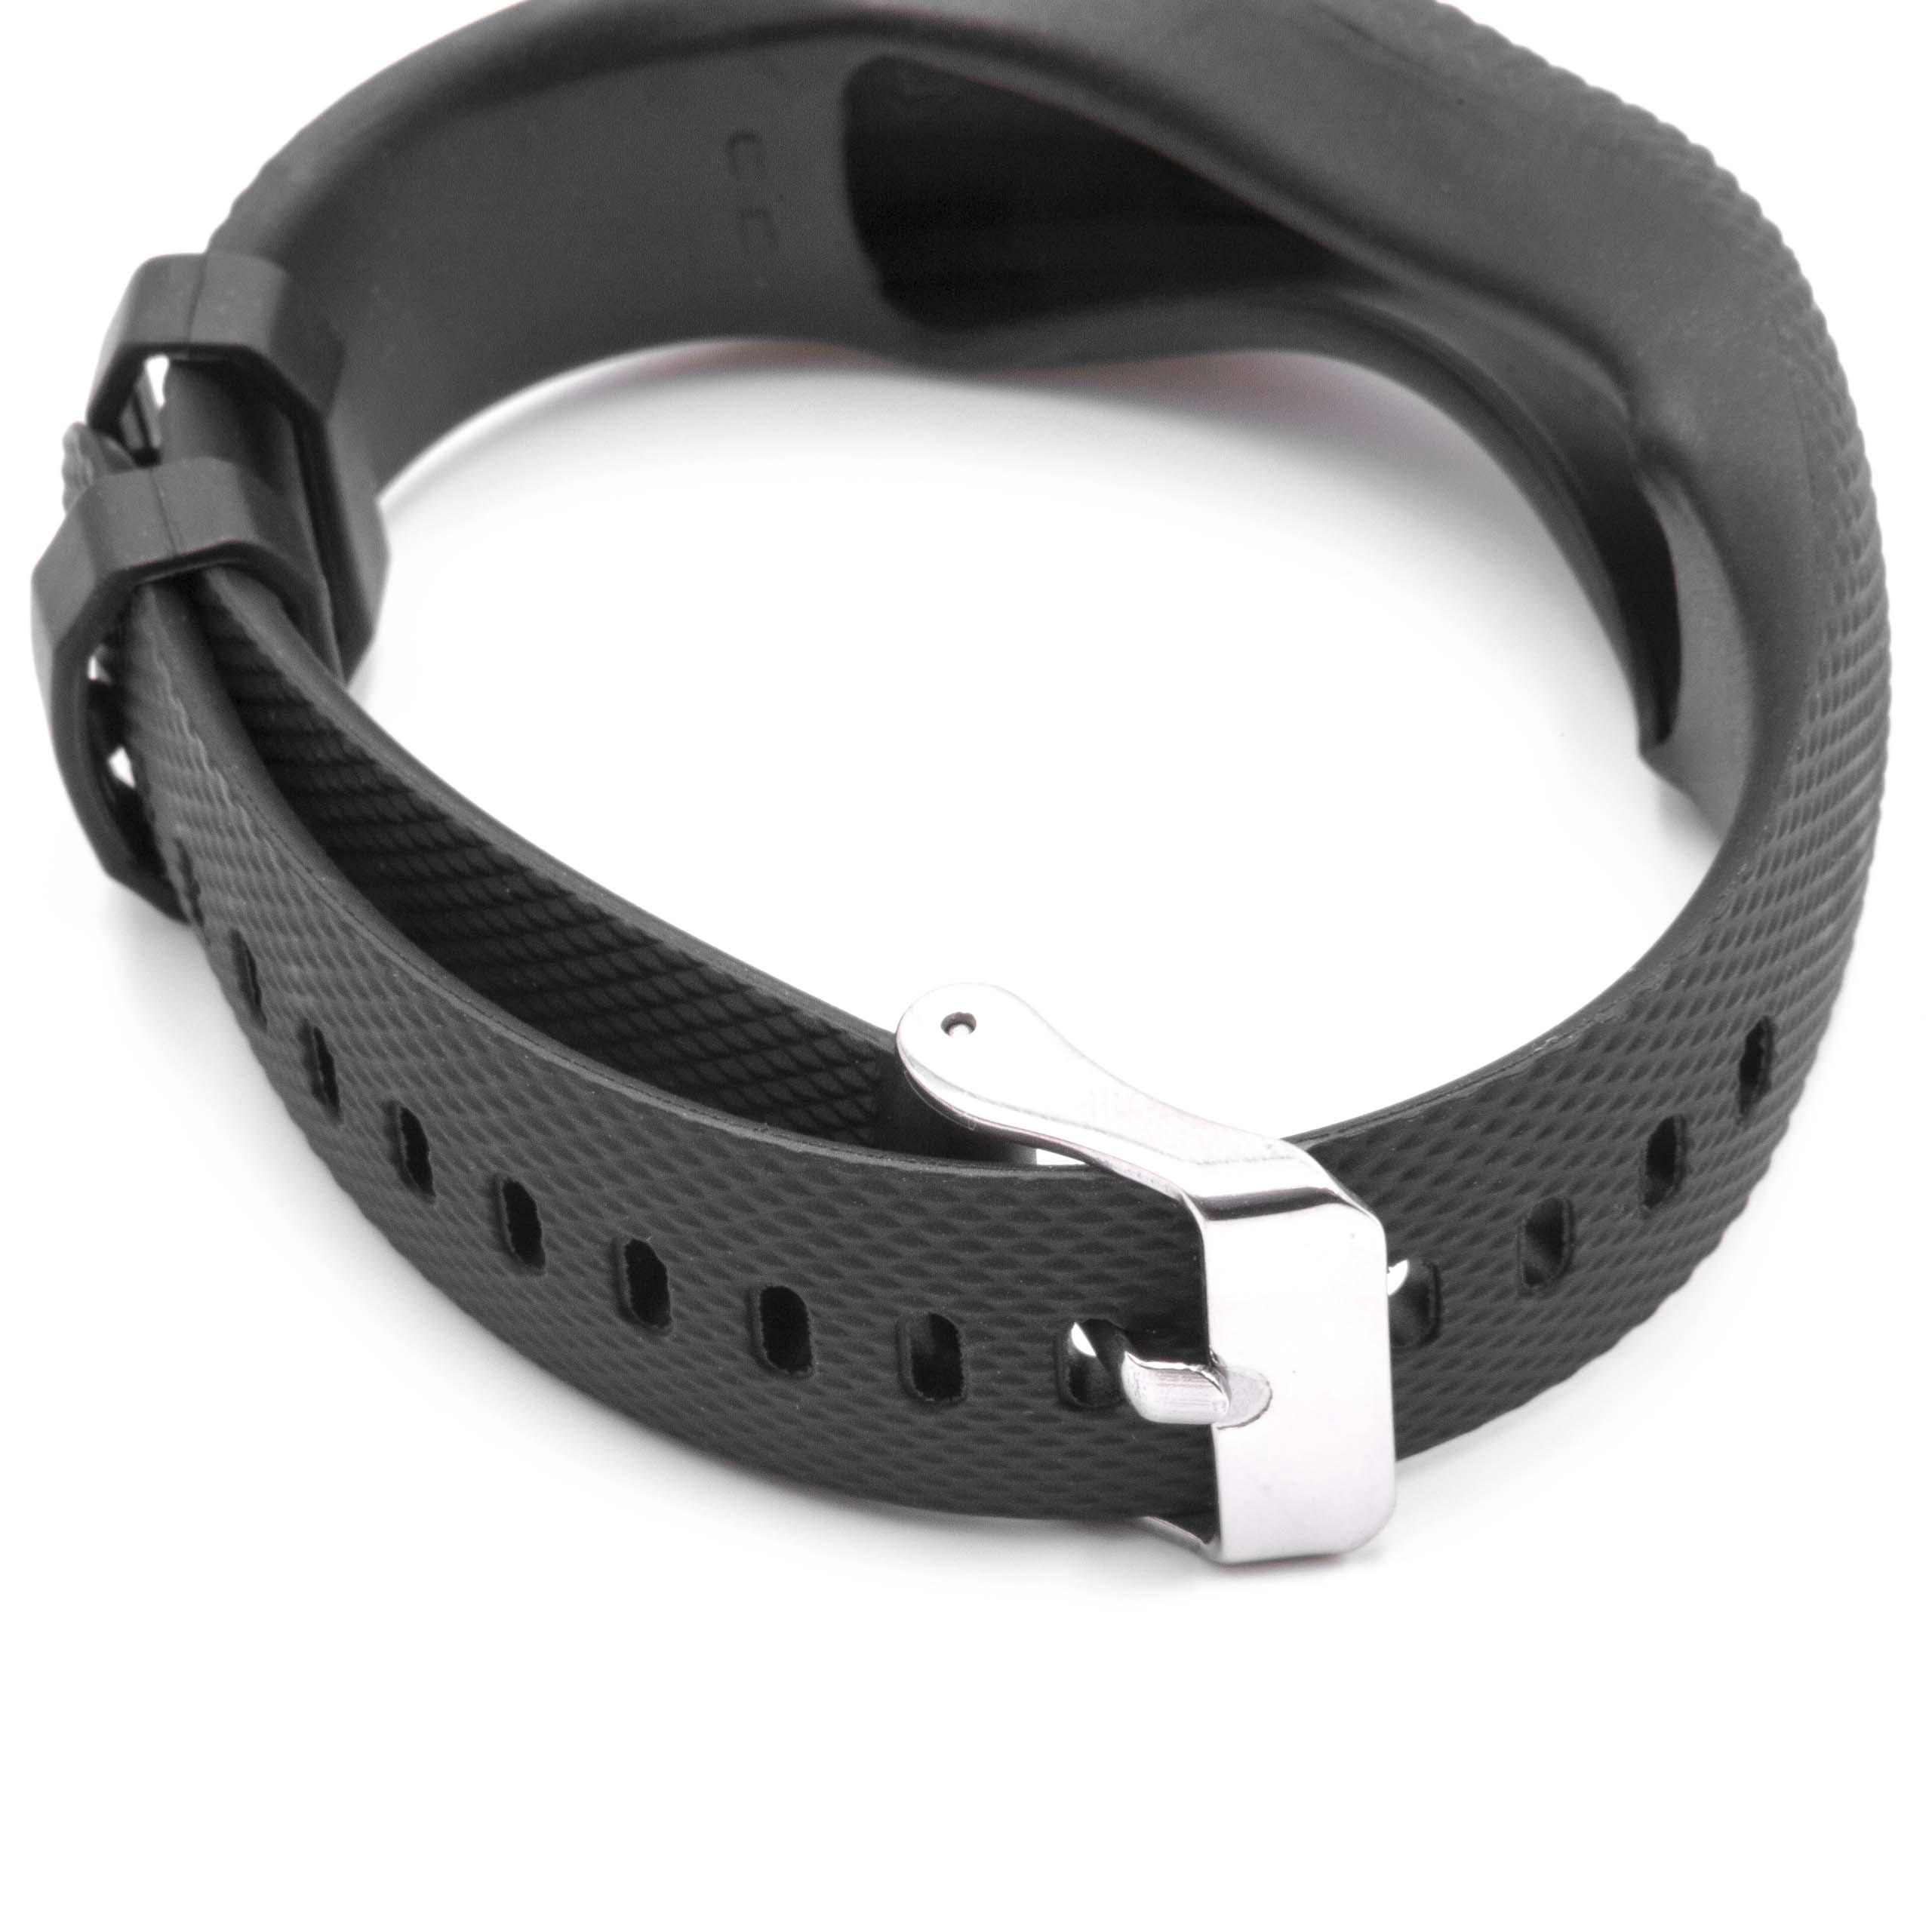 Bracelet pour montre intelligente Garmin Vivofit - 24,5 cm de long, 19,5mm de large, noir